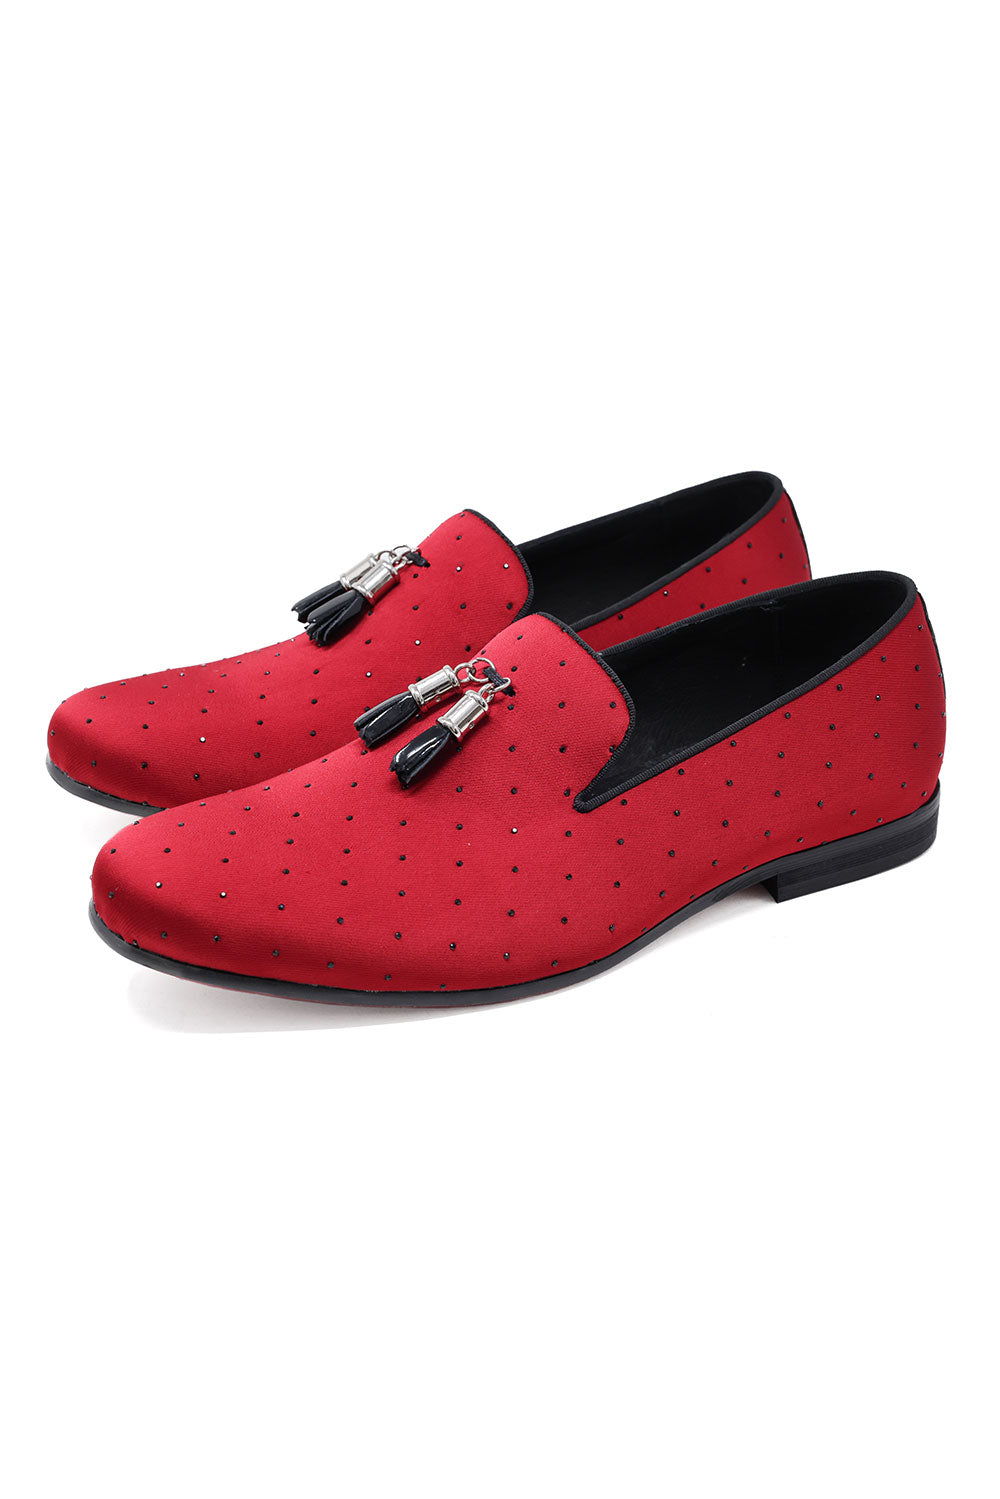 BARABAS Men's Solid Pattern Design Luxury Tassel Loafer Shoes SH3087 Red Black